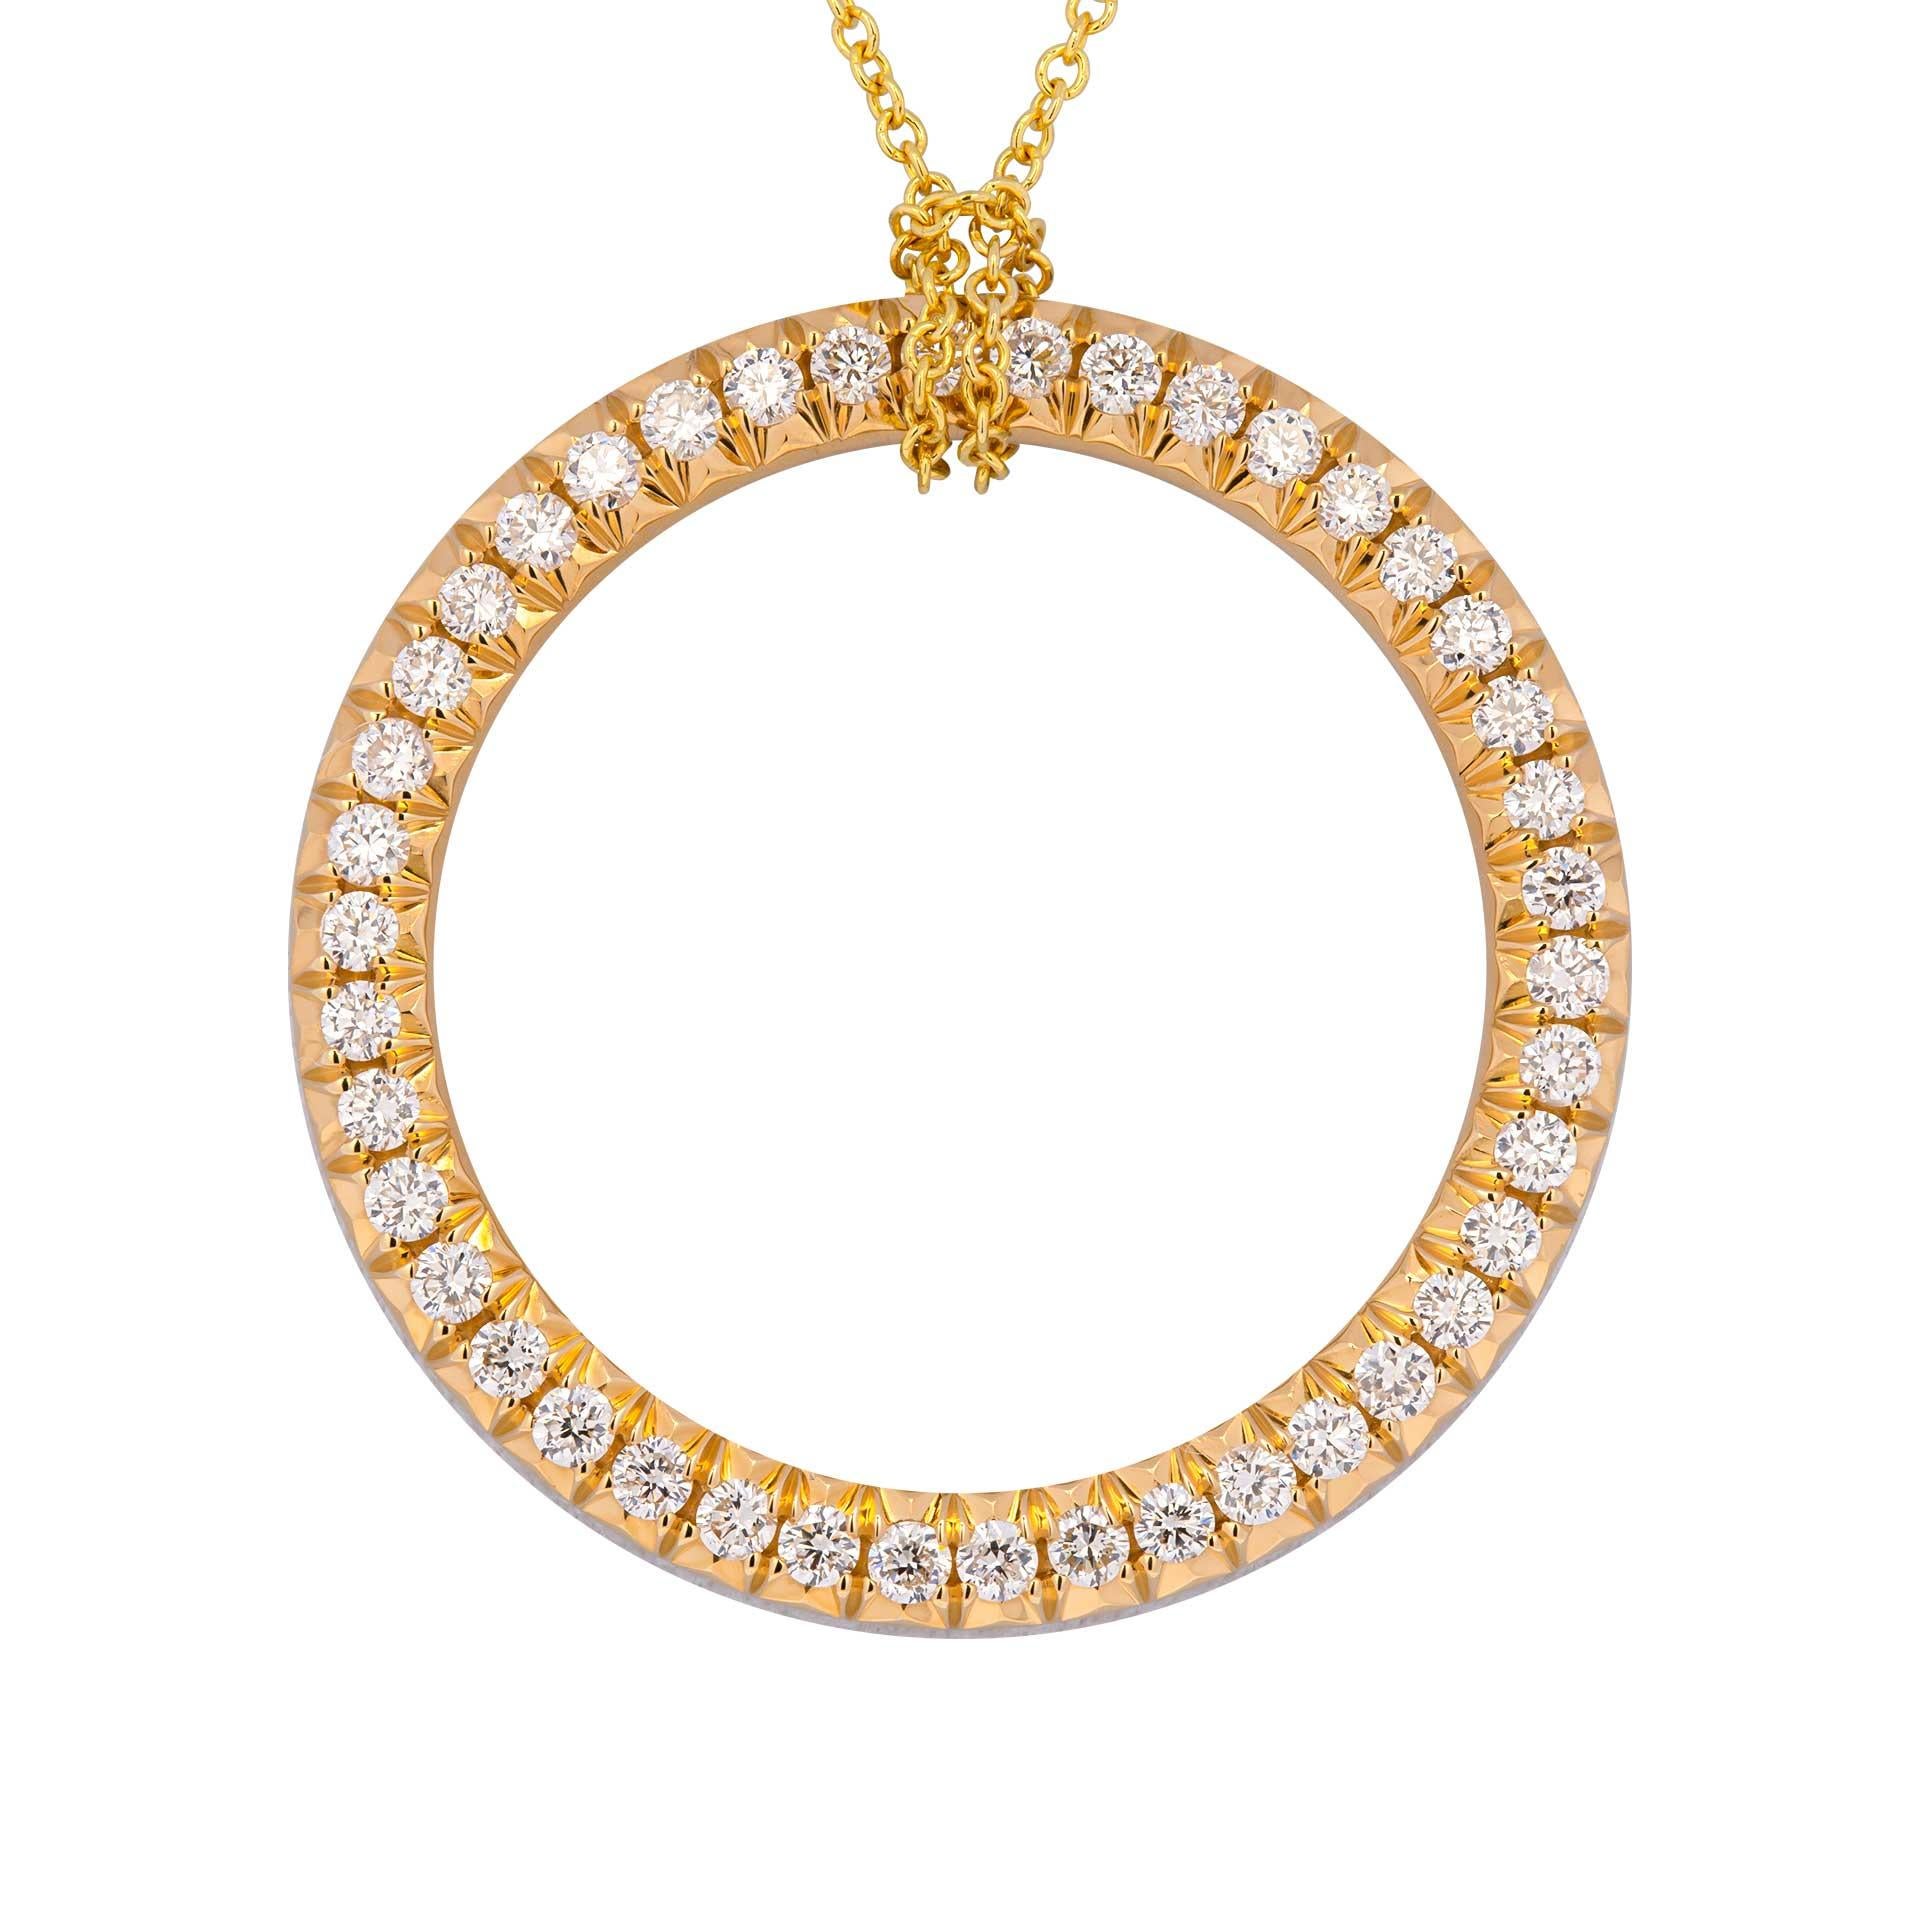 Diamant-Lebenskreis-Halskette
Montiert in 18k Gelbgold
Dieser kreisförmige Anhänger, besetzt mit 42 runden Brillanten, gefasst in 18 Karat Gelbgold, ist ein wunderschönes Beispiel für ein klassisches Motiv, das die Ewigkeit und die unendliche Liebe